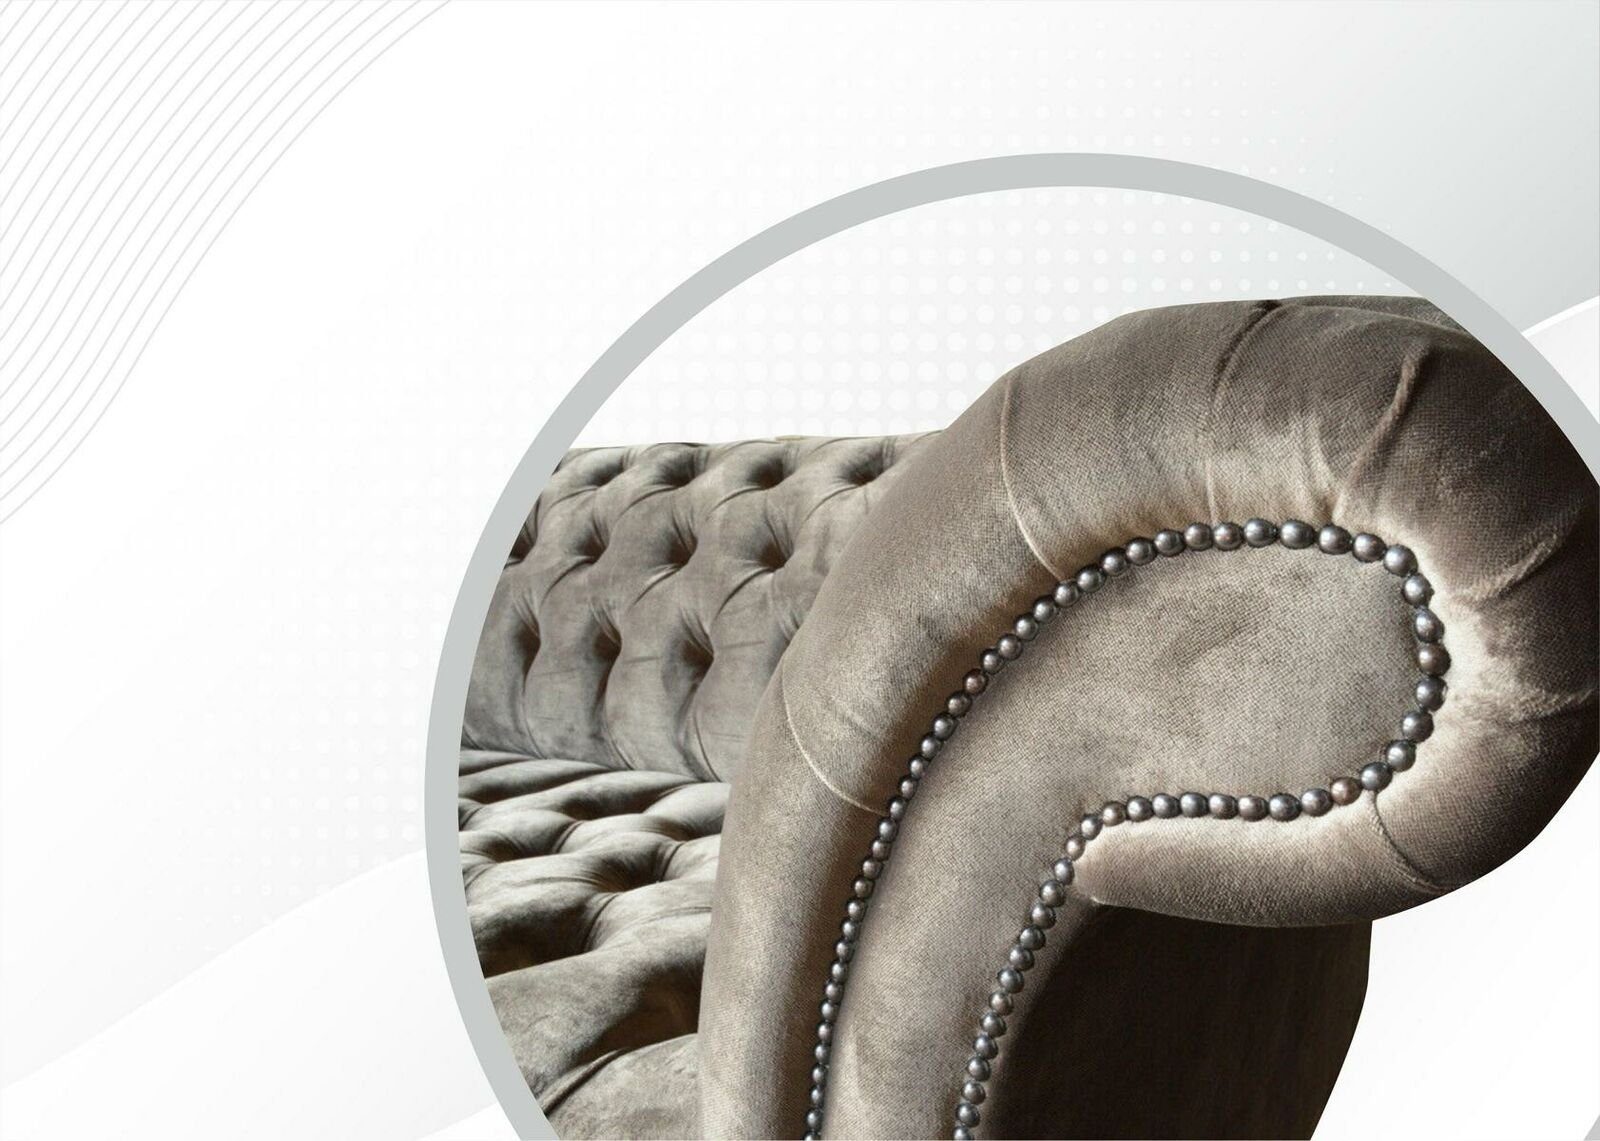 Design 3-Sitzer Chesterfield Made Chesterfield-Sofa Möbel luxus Textil Europe in JVmoebel Neu, Grauer